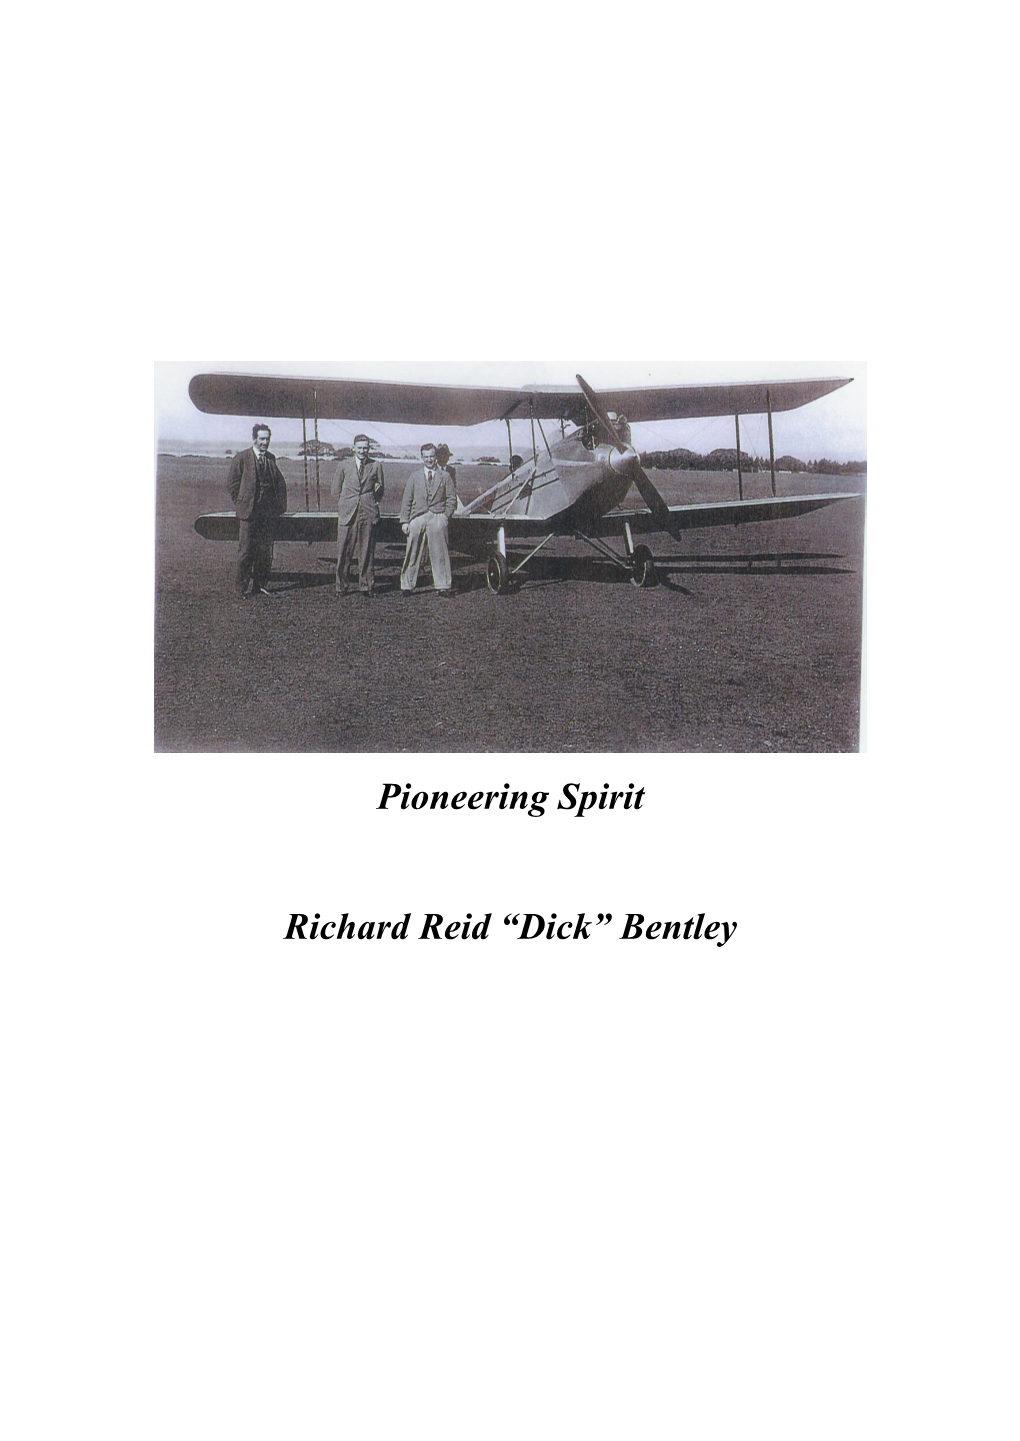 Pioneering Spirit Richard Reid “Dick” Bentley